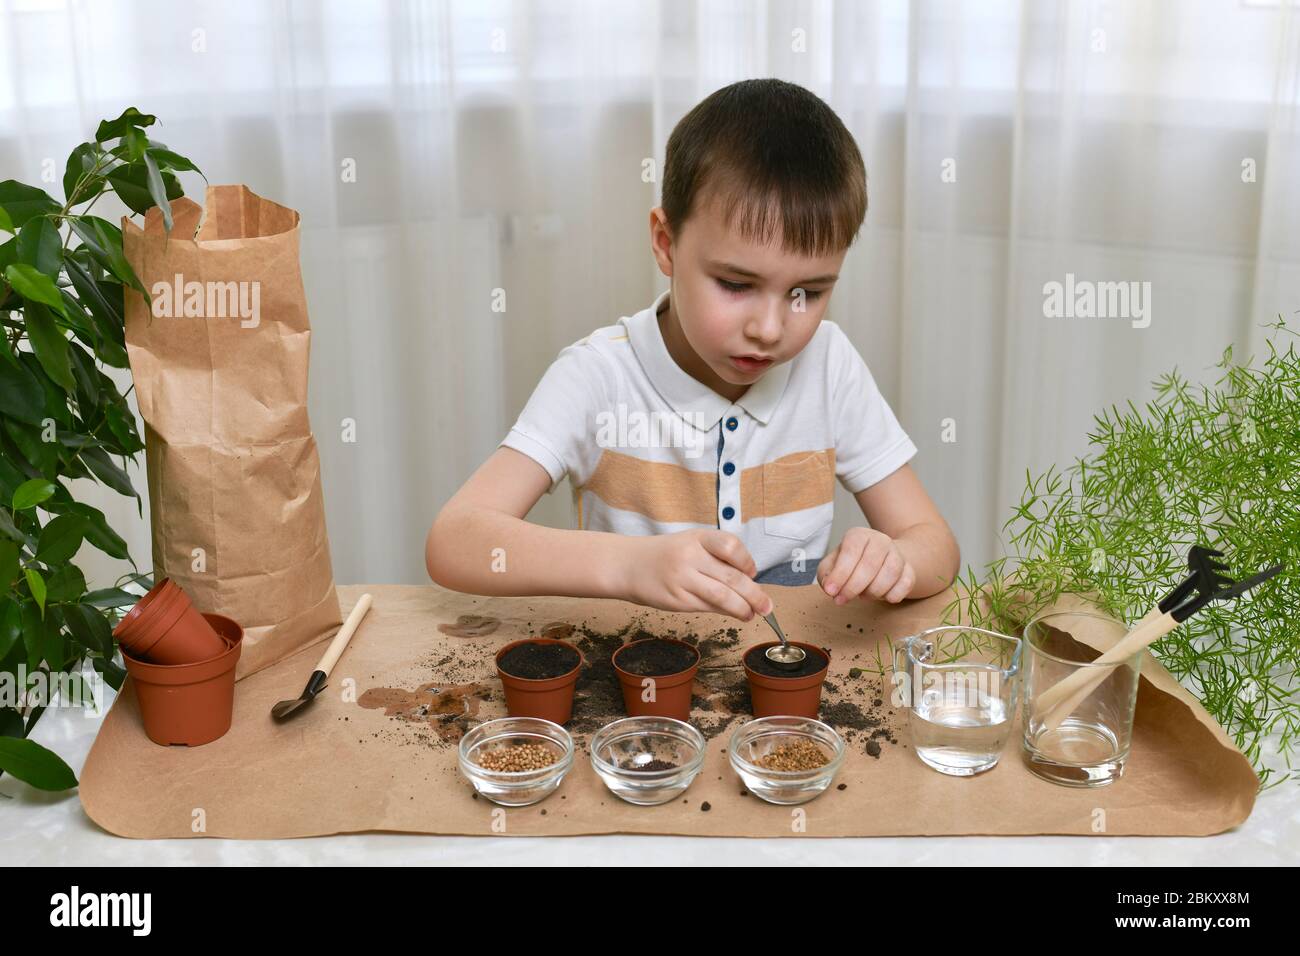 Piantando i semi di micro verdi in pentole. Il ragazzo mette delicatamente i semi con le pinzette in una pentola attraverso un imbuto. Foto Stock